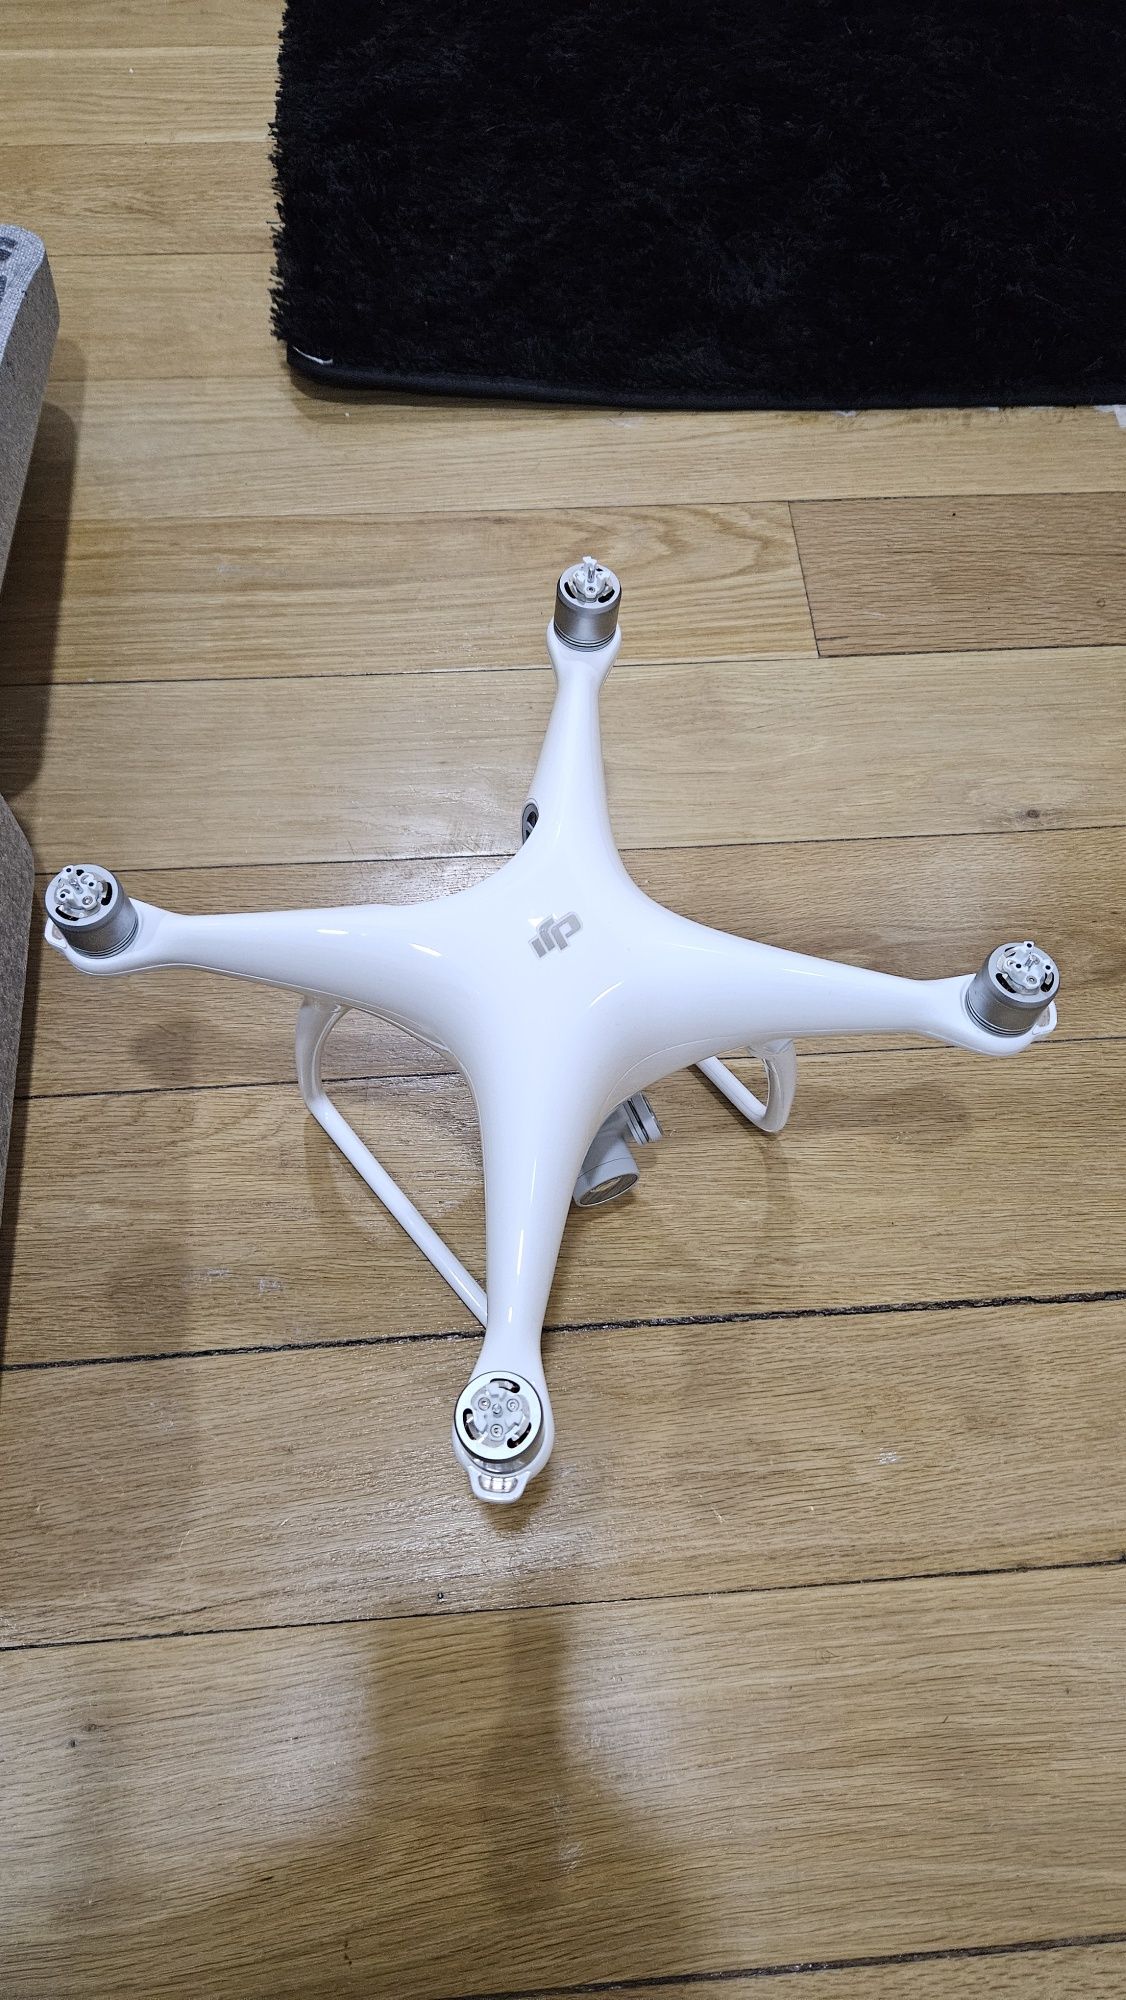 Drone Dji phantom 4